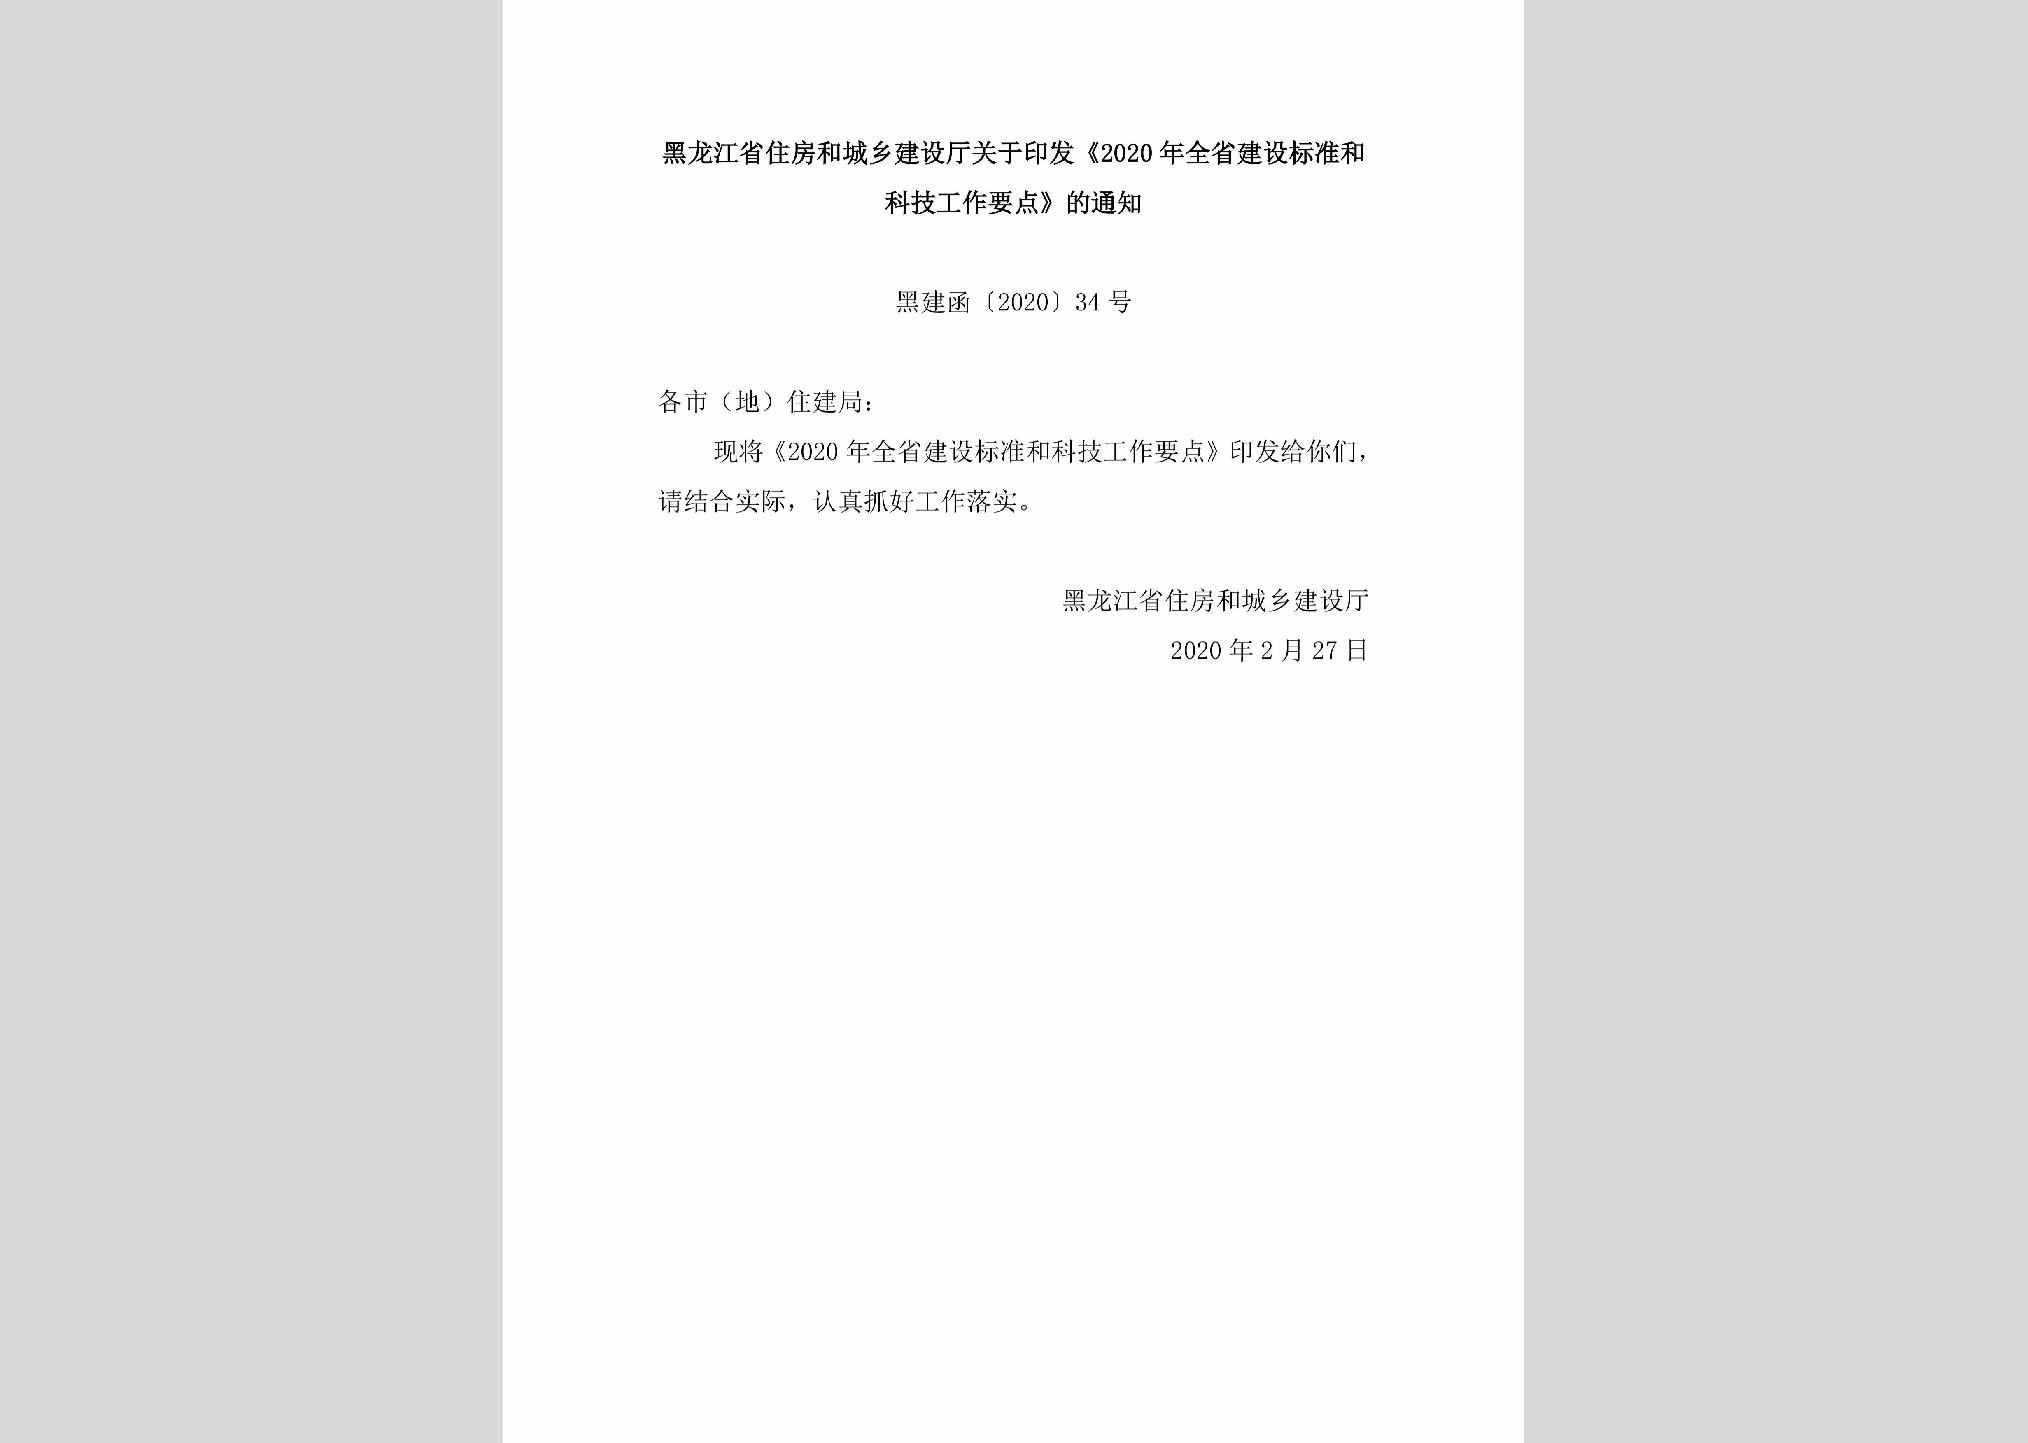 黑建函[2020]34号：黑龙江省住房和城乡建设厅关于印发《2020年全省建设标准和科技工作要点》的通知